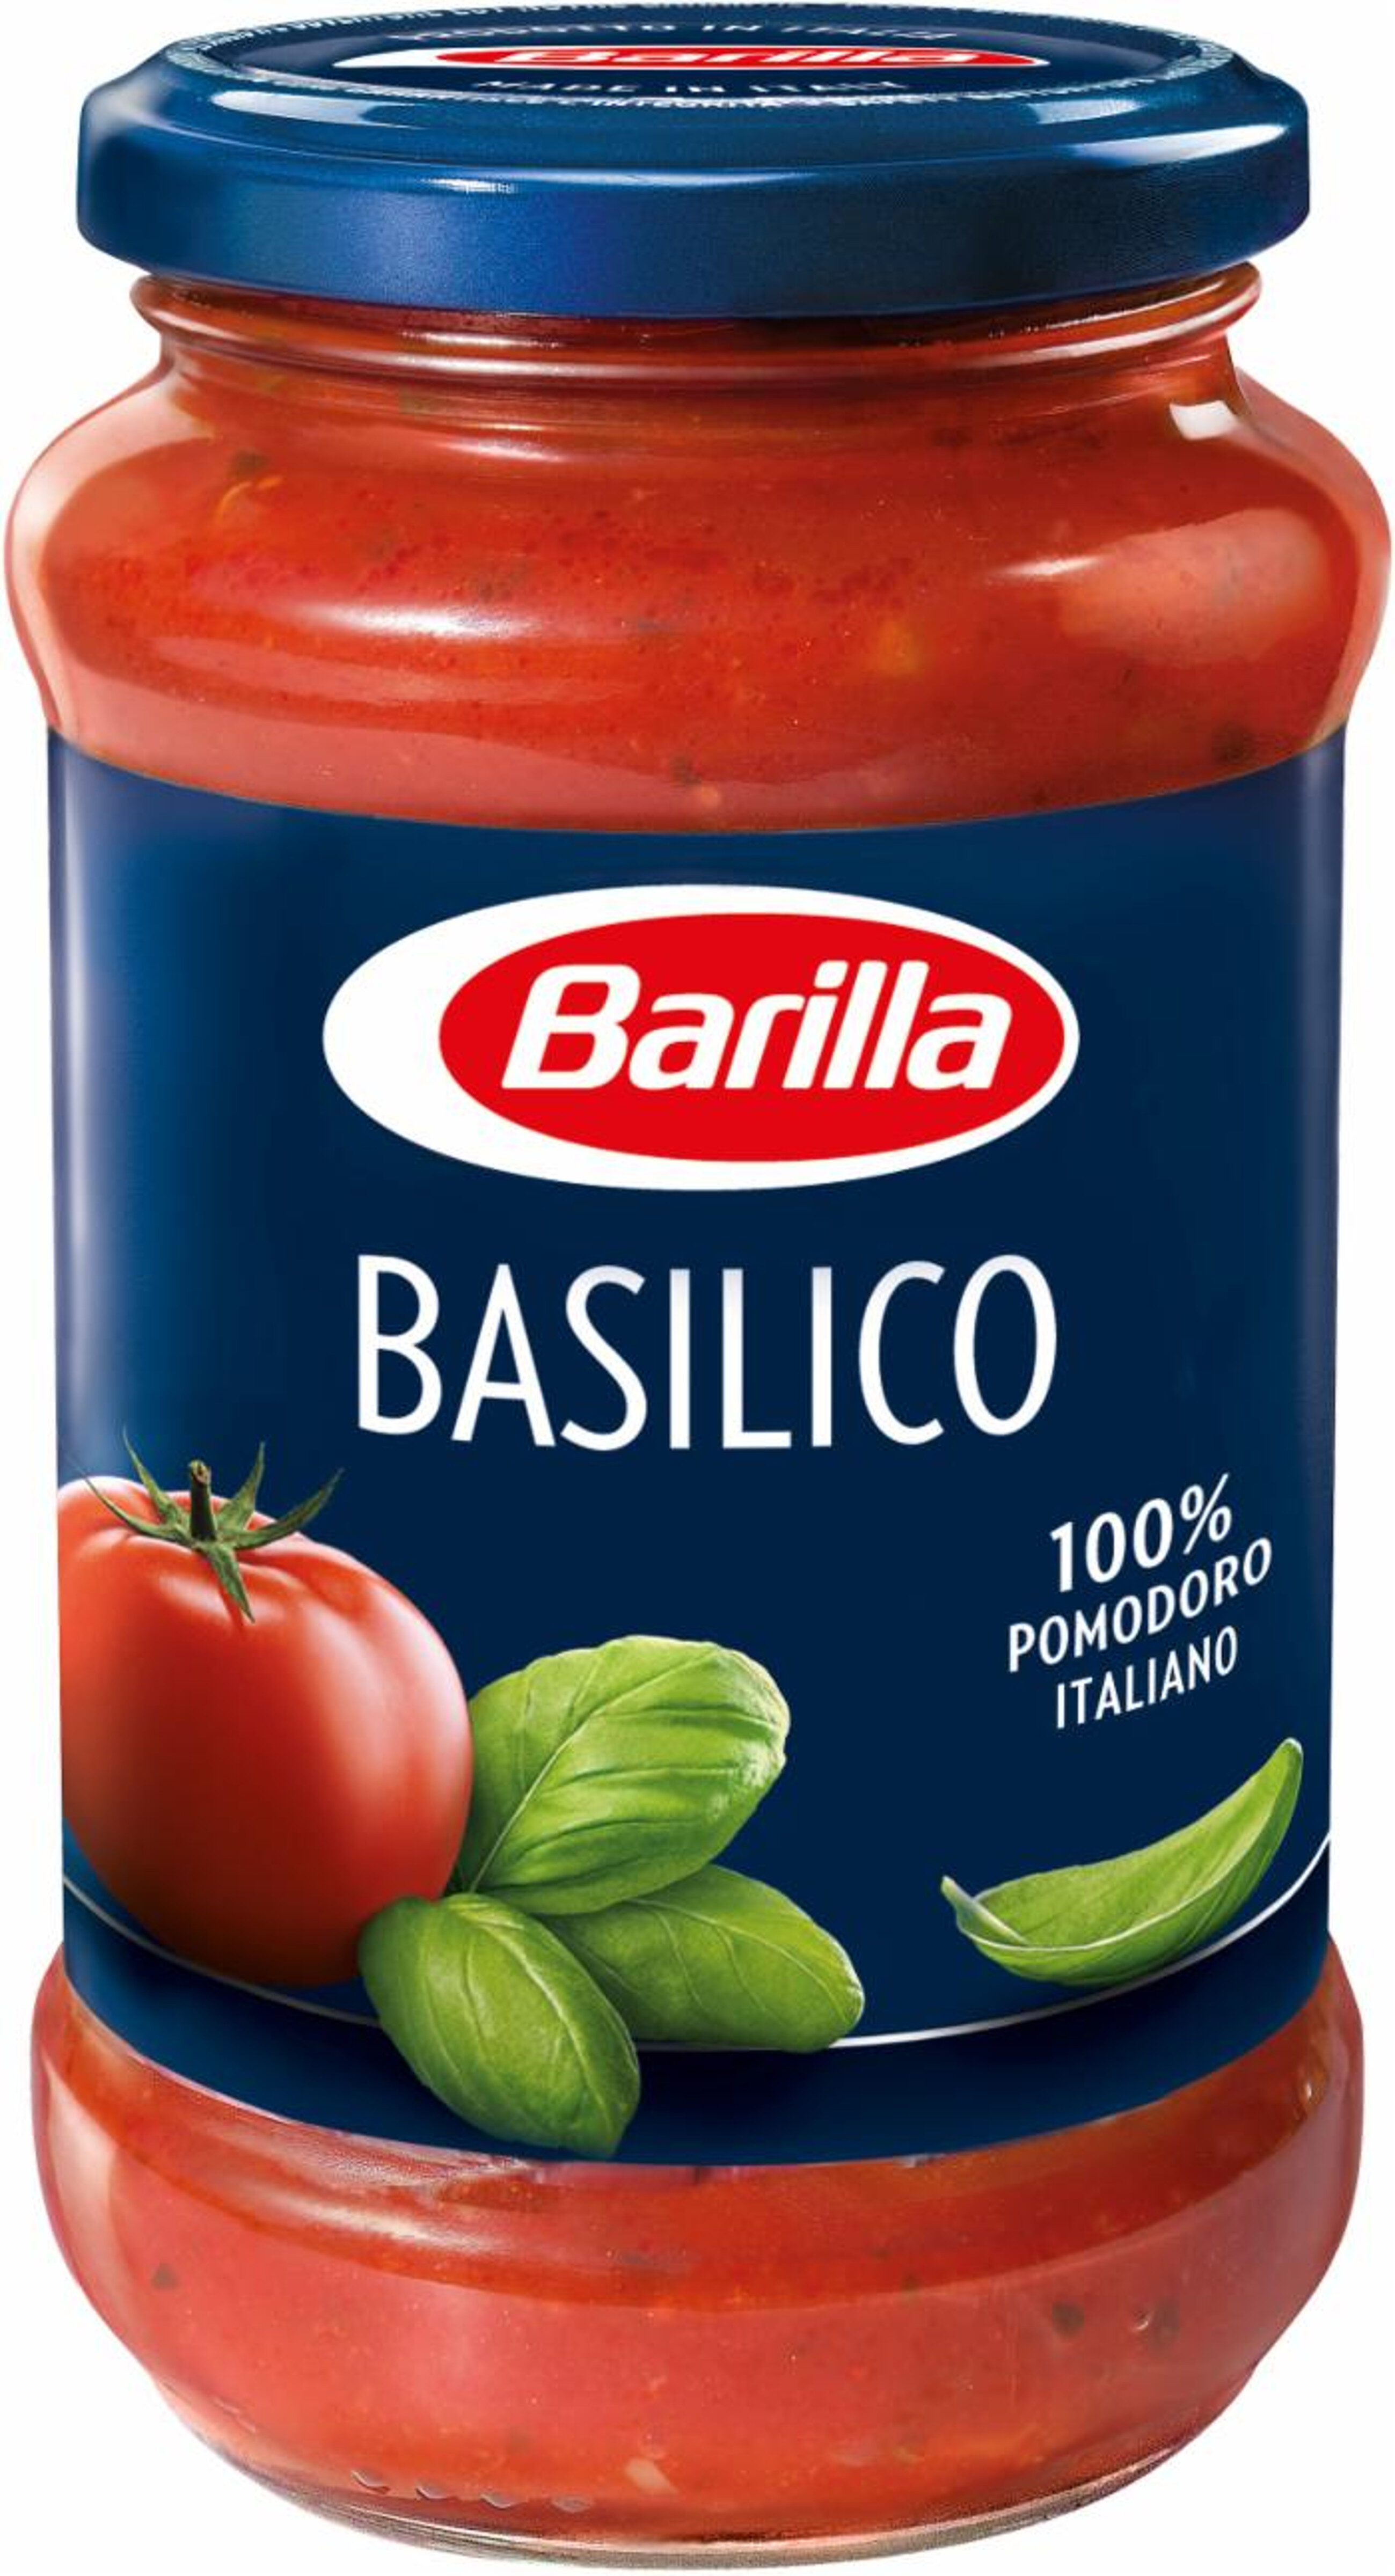 Sauce tomate au basilic 400g - Product - fr